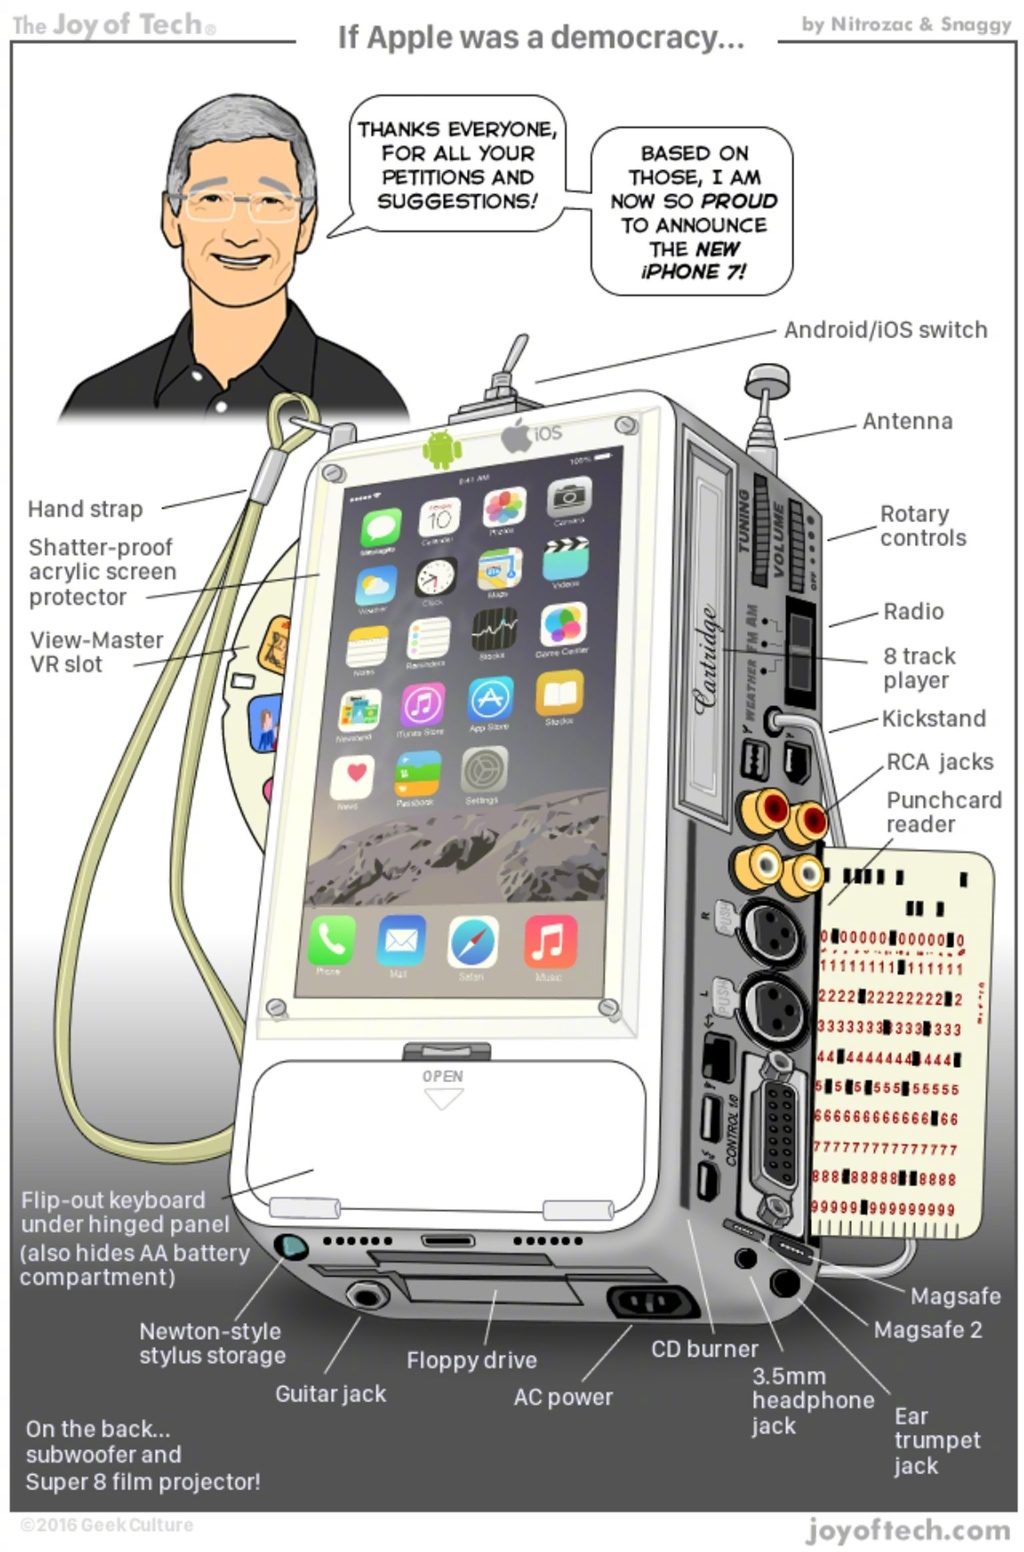 苹果根据大众的意见设计的 iPhone 应该是这样的